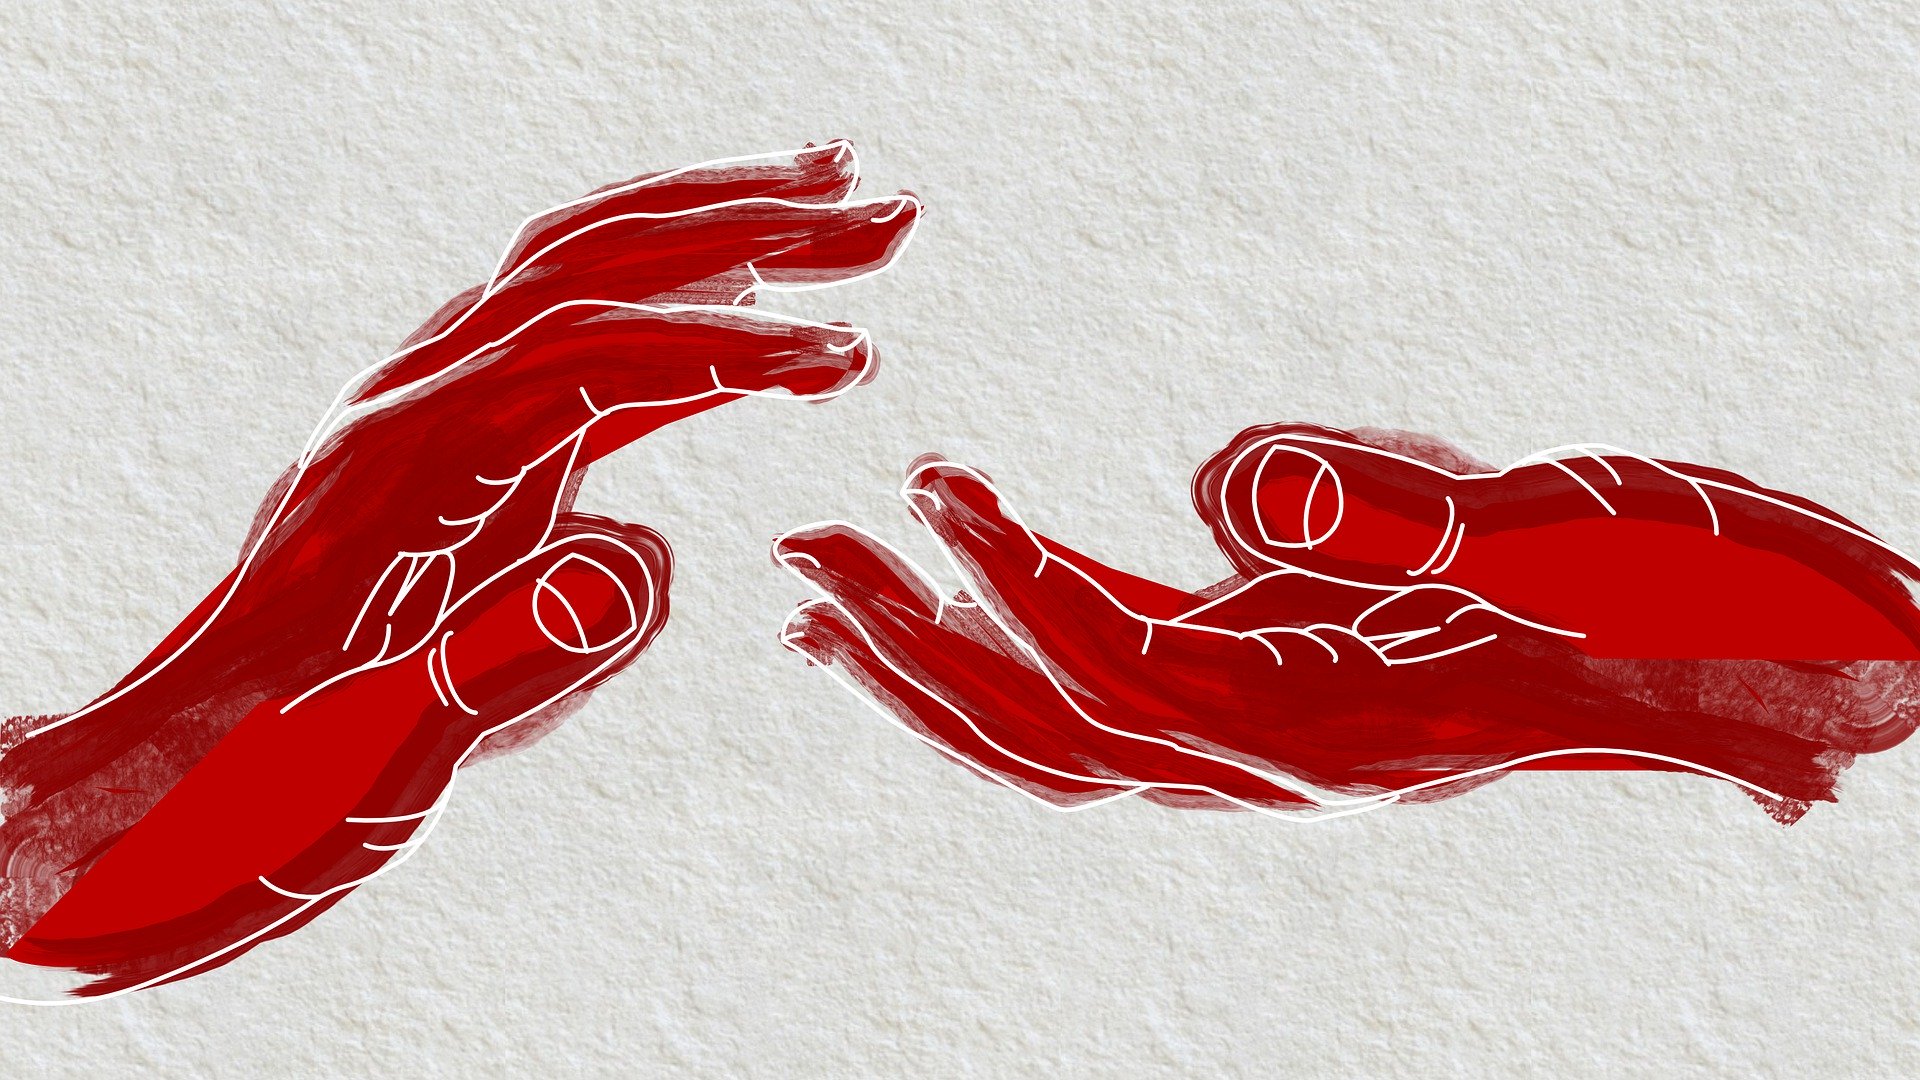 Kaksi punaista kättä, jotka kurkottavat toisiaan kohti.